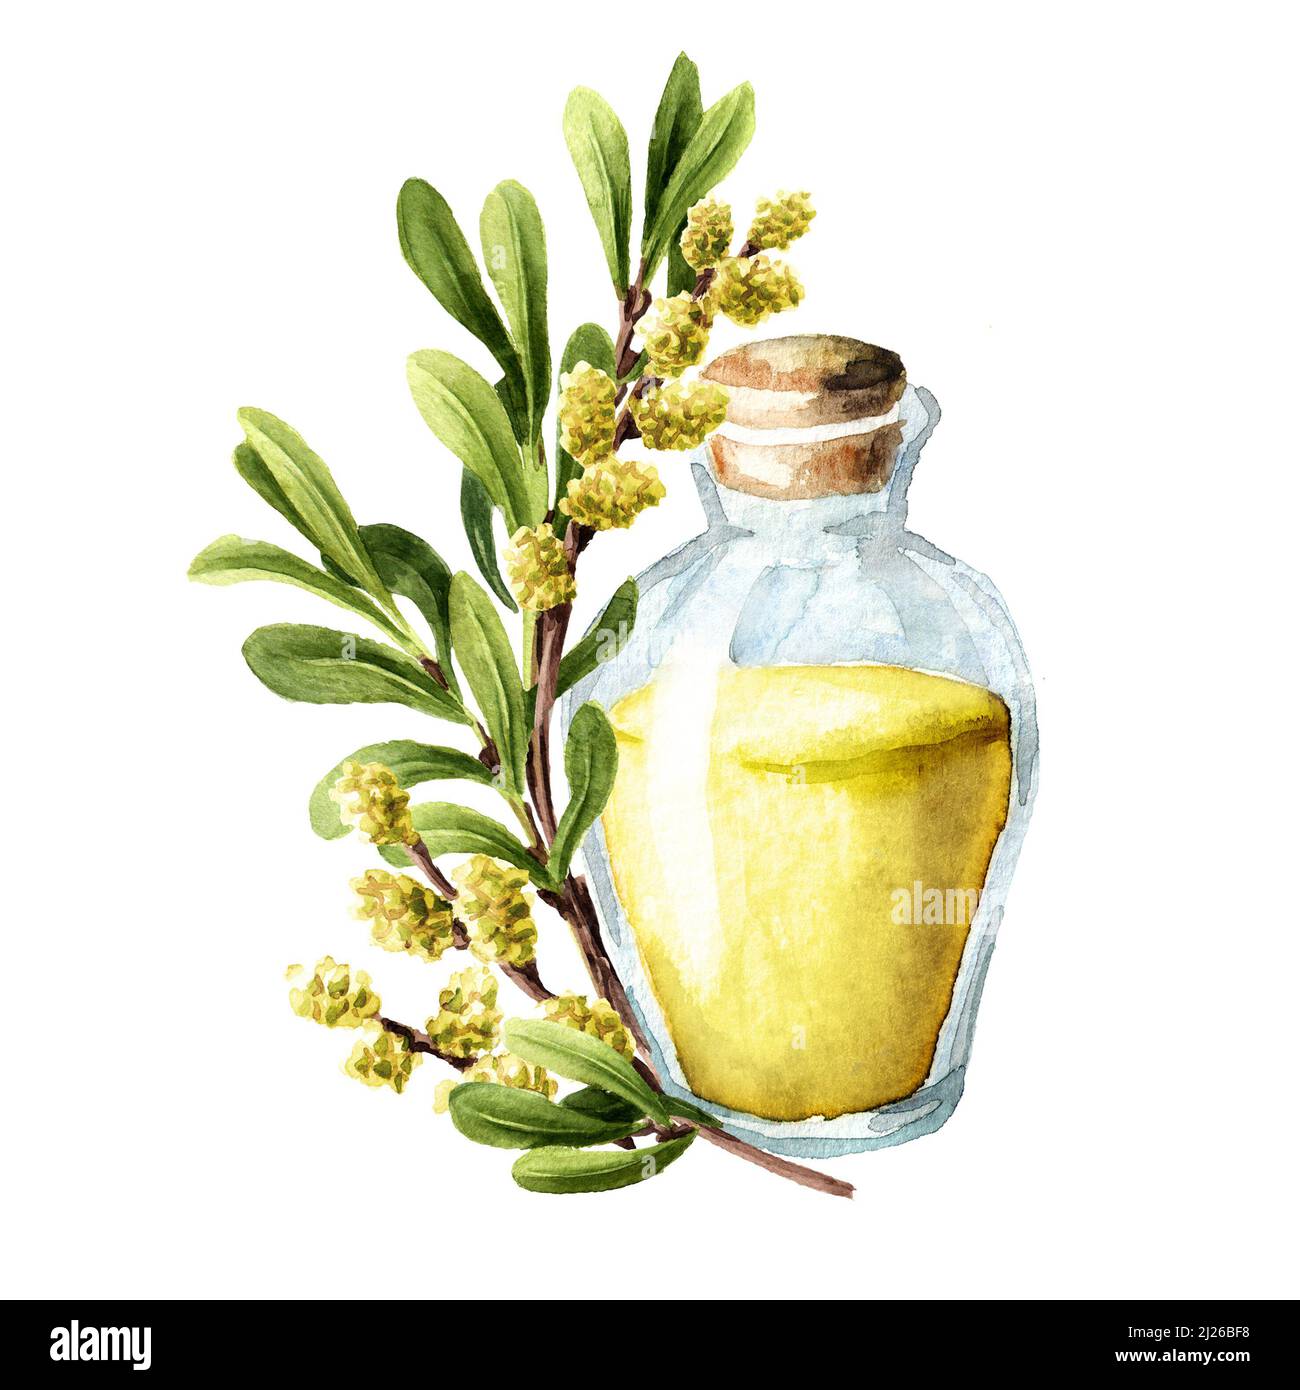 Huile essentielle de myrte de tourbière, plante médicinale. Illustration aquarelle dessinée à la main, isolée sur fond blanc Banque D'Images